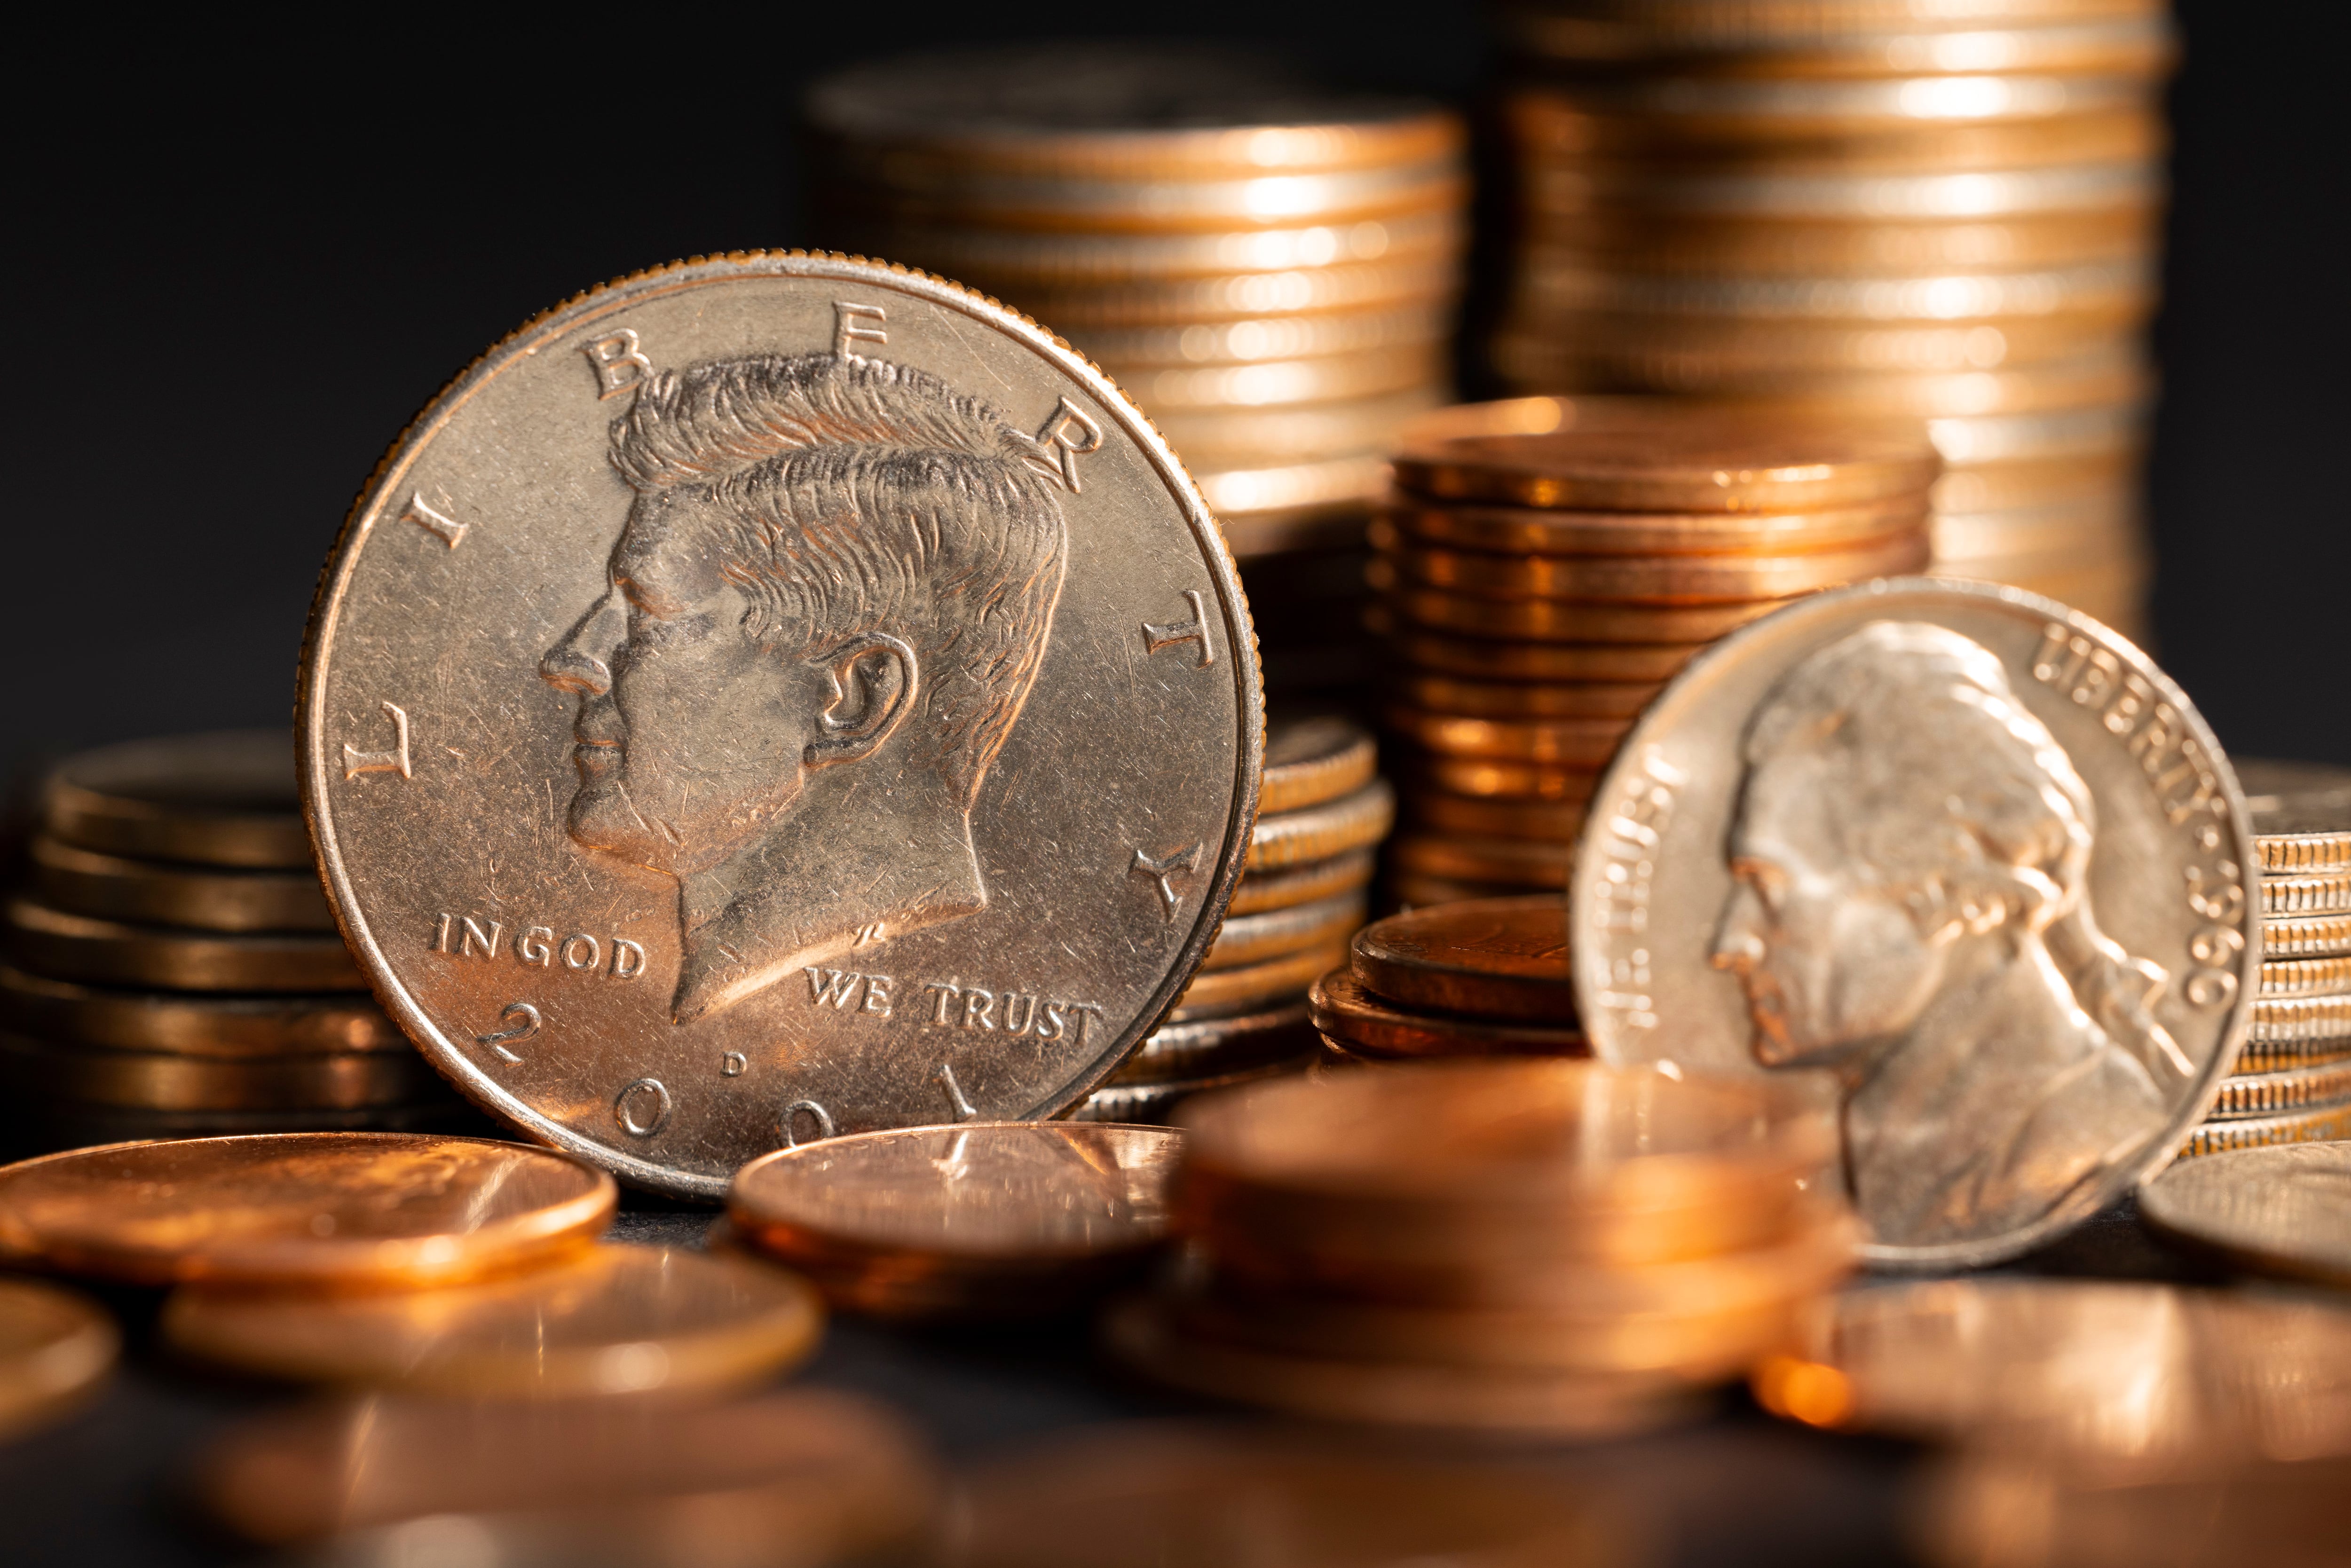 La moneda de 25 centavos de dólar de los Estados Unidos es conocida como un "quarter" en inglés. Actualmente, hay diferentes diseños de reverso en los quarters estadounidenses, que forman la serie conocida como "America the Beautiful Quarters Program" (Foto: Freepik)